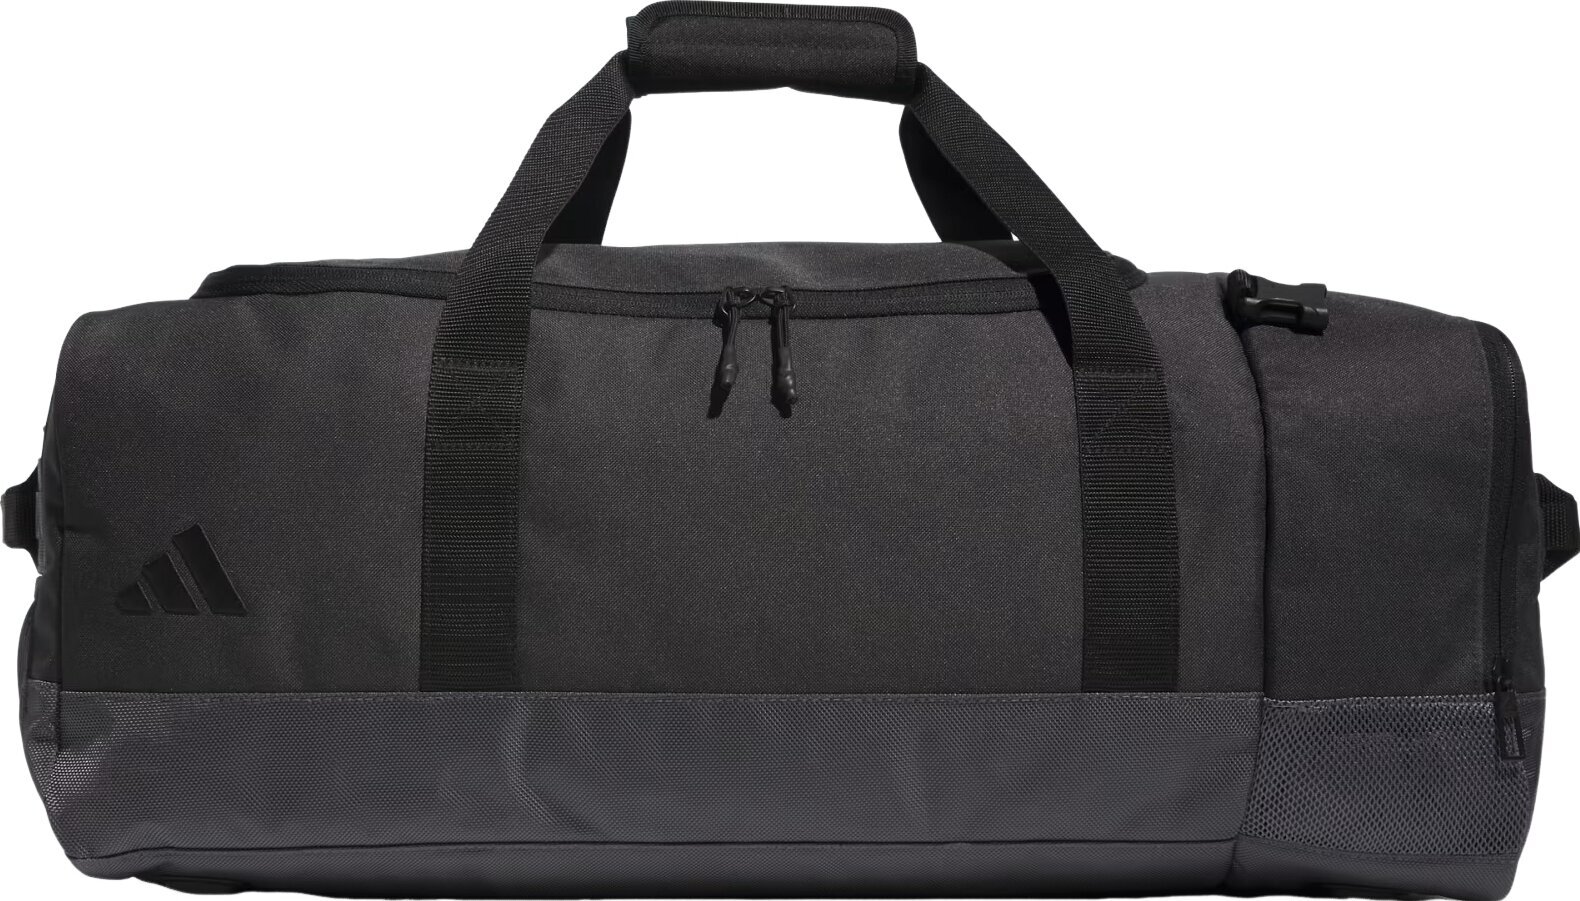 Lifestyle-rugzak / tas Adidas Hybrid Duffle Bag Grey 55 L Sport Bag